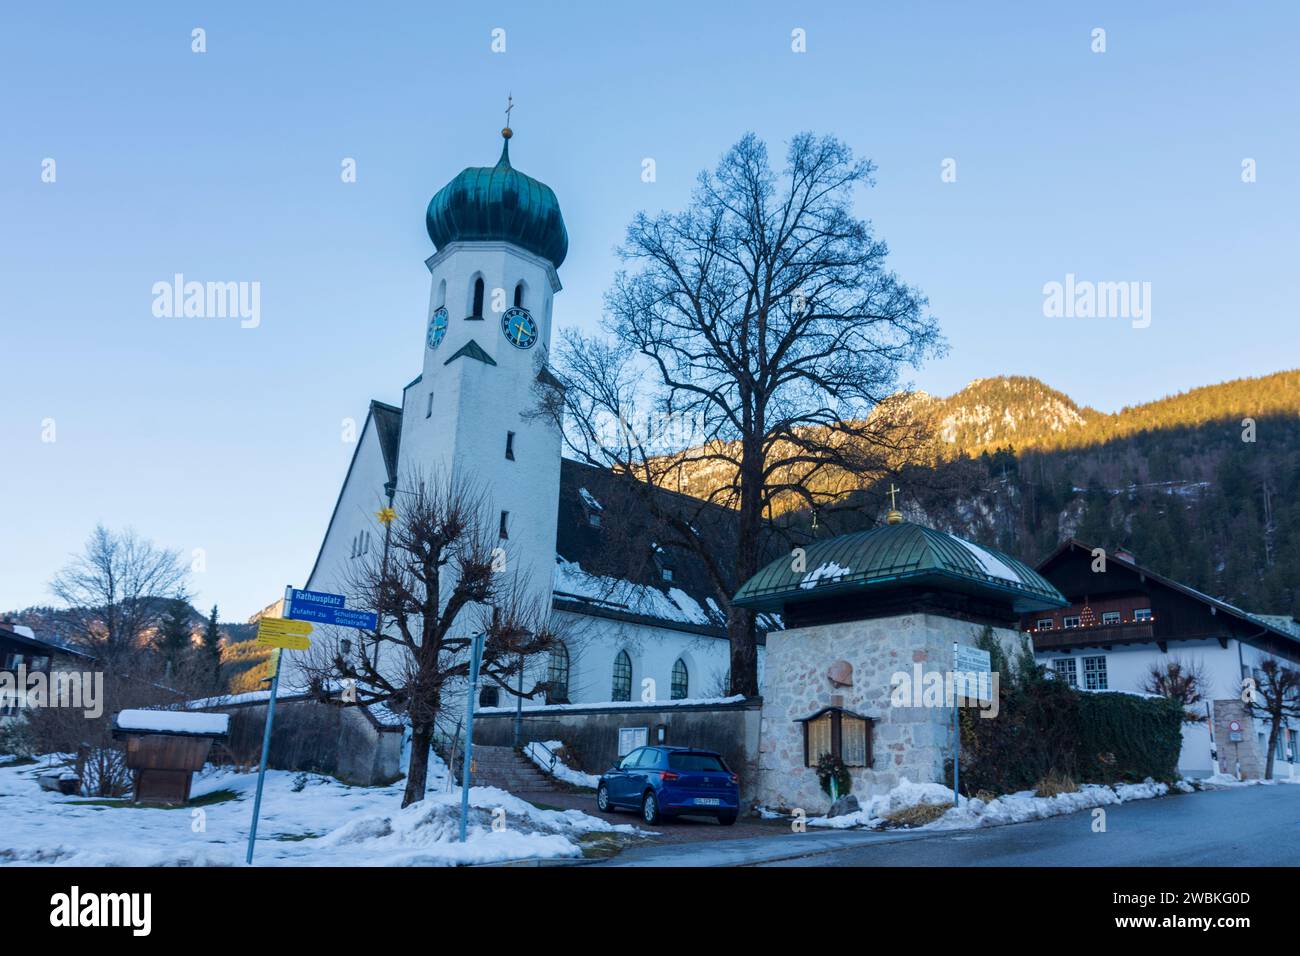 Bischofswiesen, church Bischofswiesen, Berchtesgadener Land, Upper Bavaria, Bavaria, Germany Stock Photo